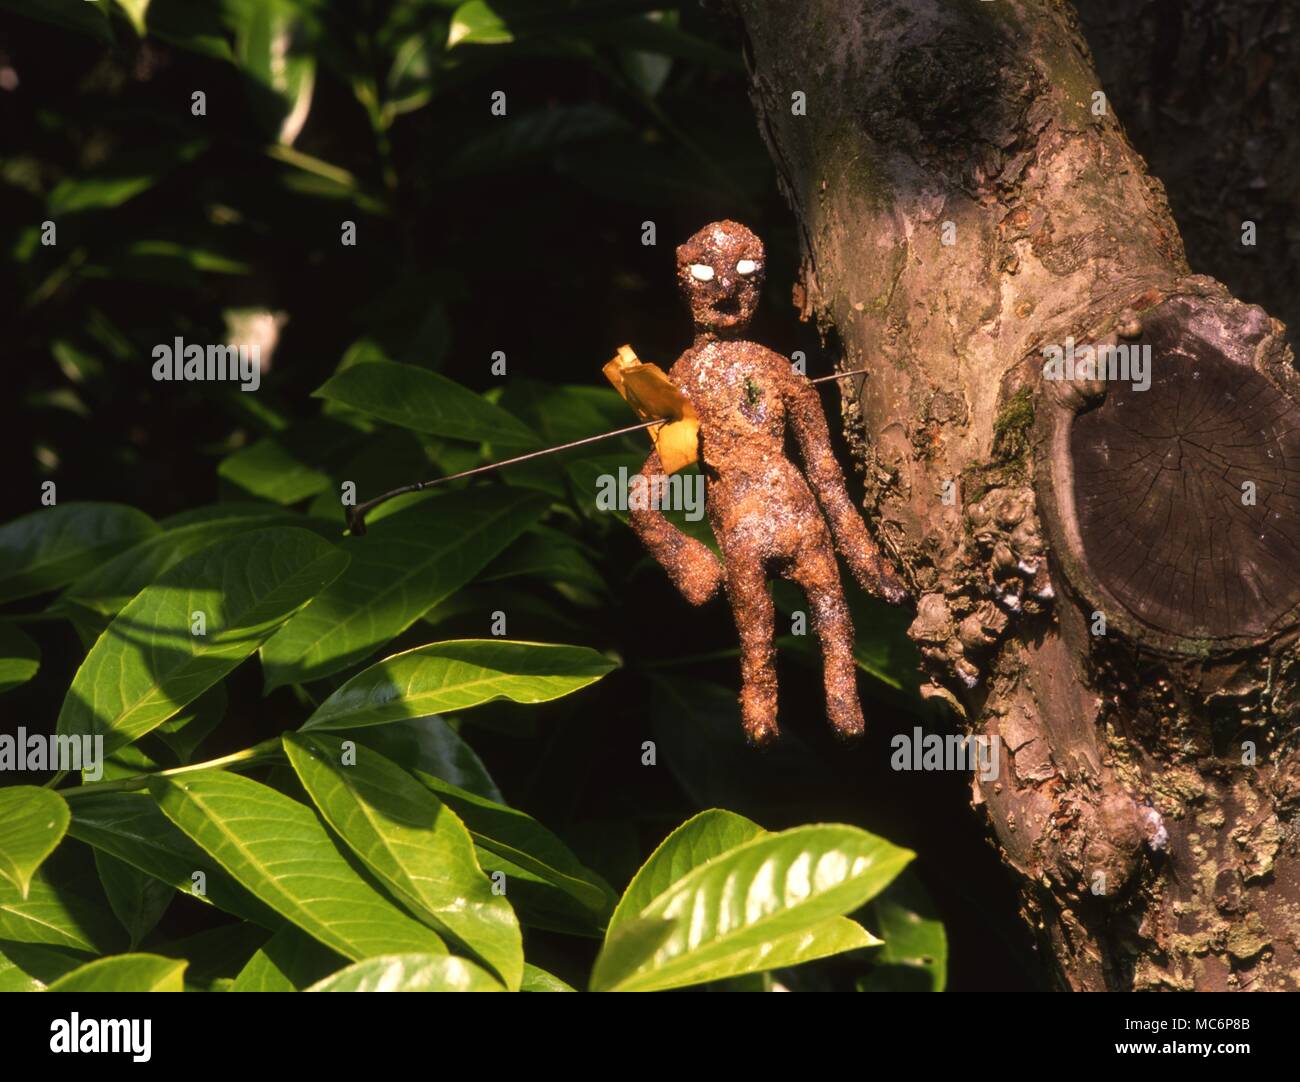 Malédiction doll, une poupée fabriquée, transpercé d'un arbre afin de mettre douloureuse maladie ou la mort de la victime dont le nom figure sur le transpercer feuille de papier. Banque D'Images